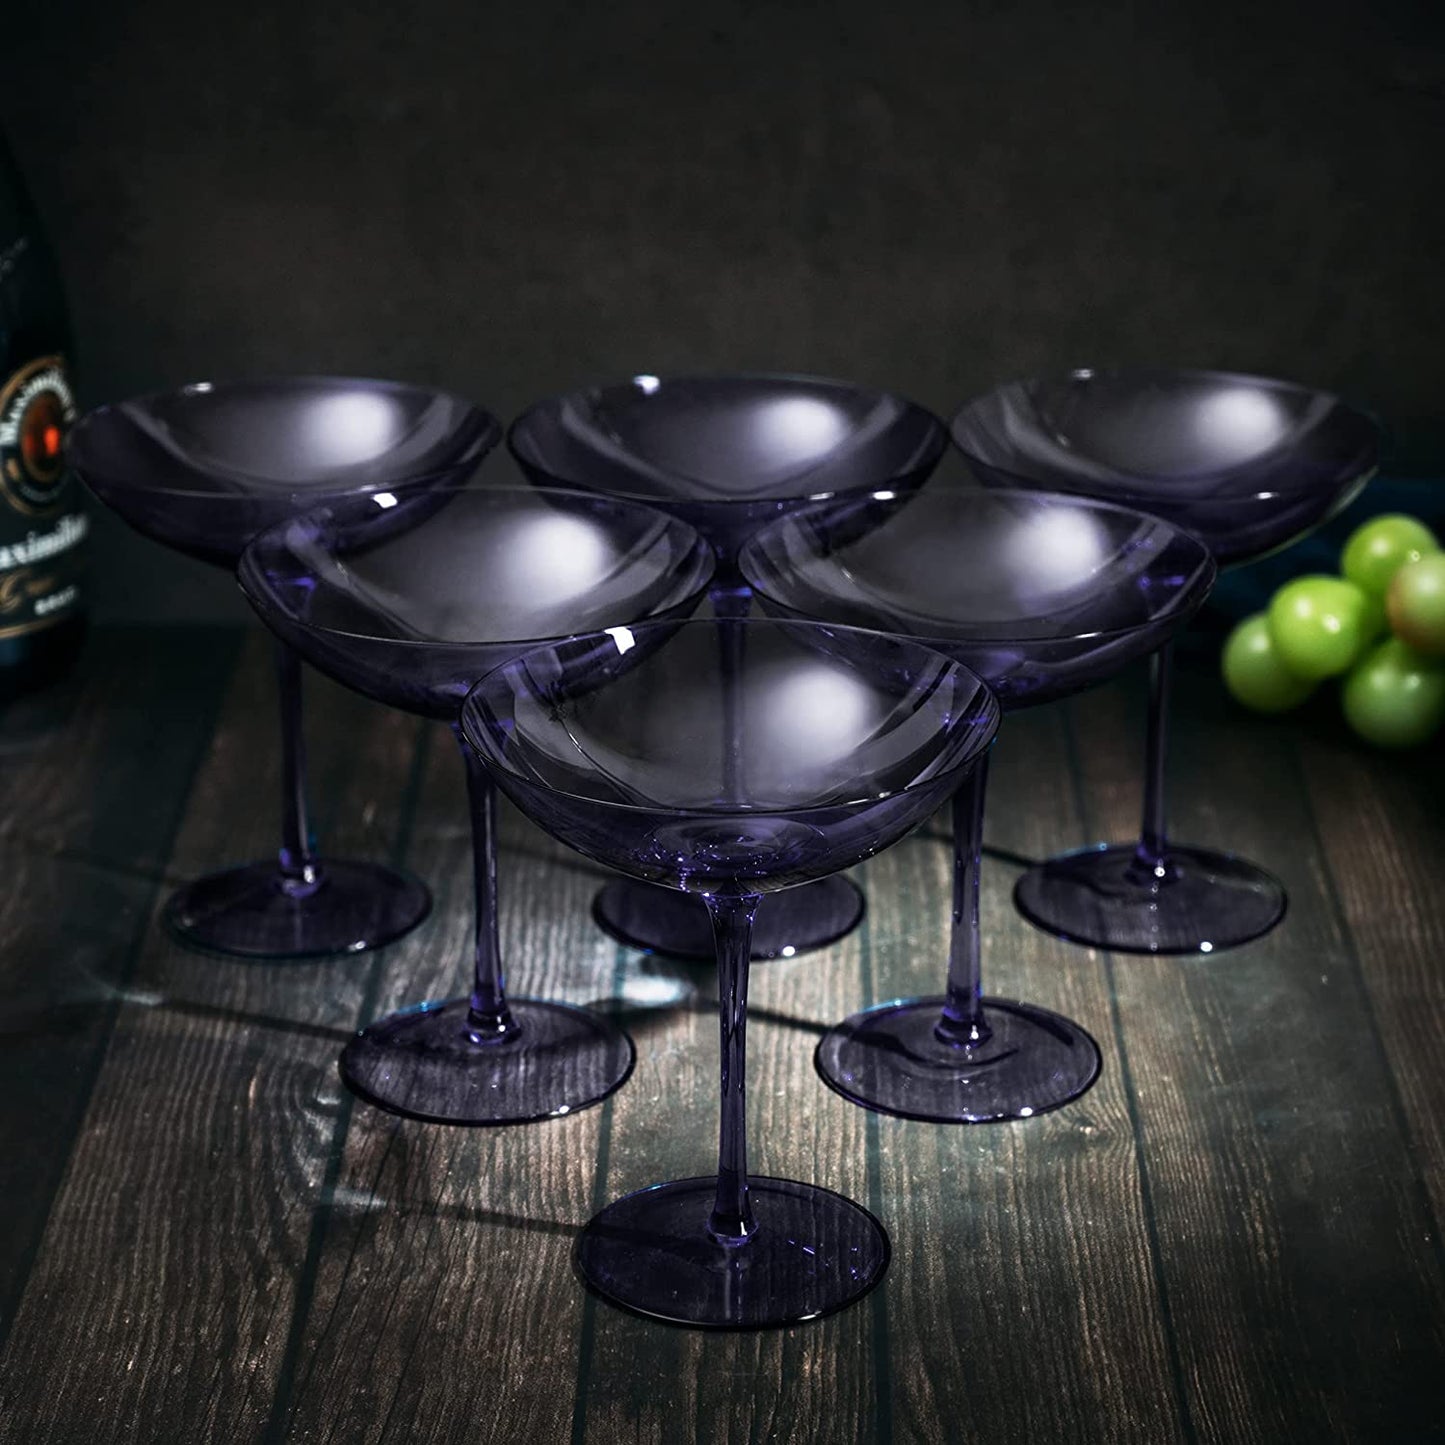 Corso Coupe Cocktail Glassware, Set of 6, Purple